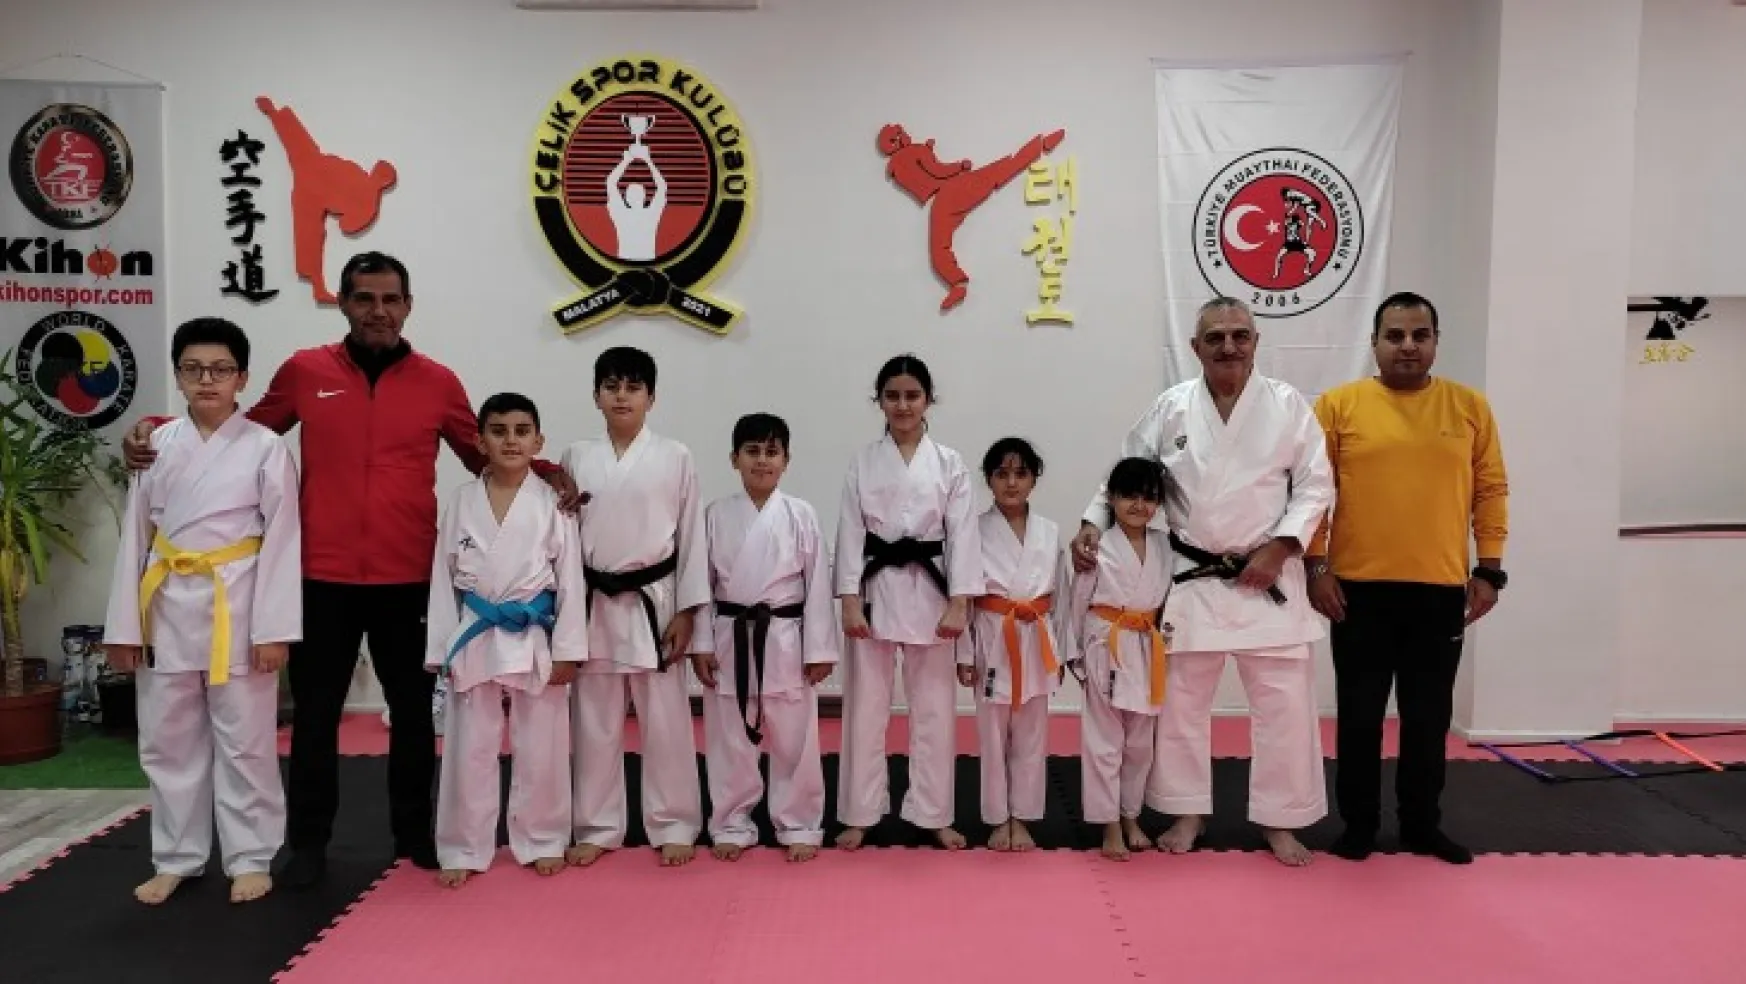 Türkiye Karate federasyonu 5. Dan Sensei Haluk Öner'den Malatyalılara Özel Karate Semineri.